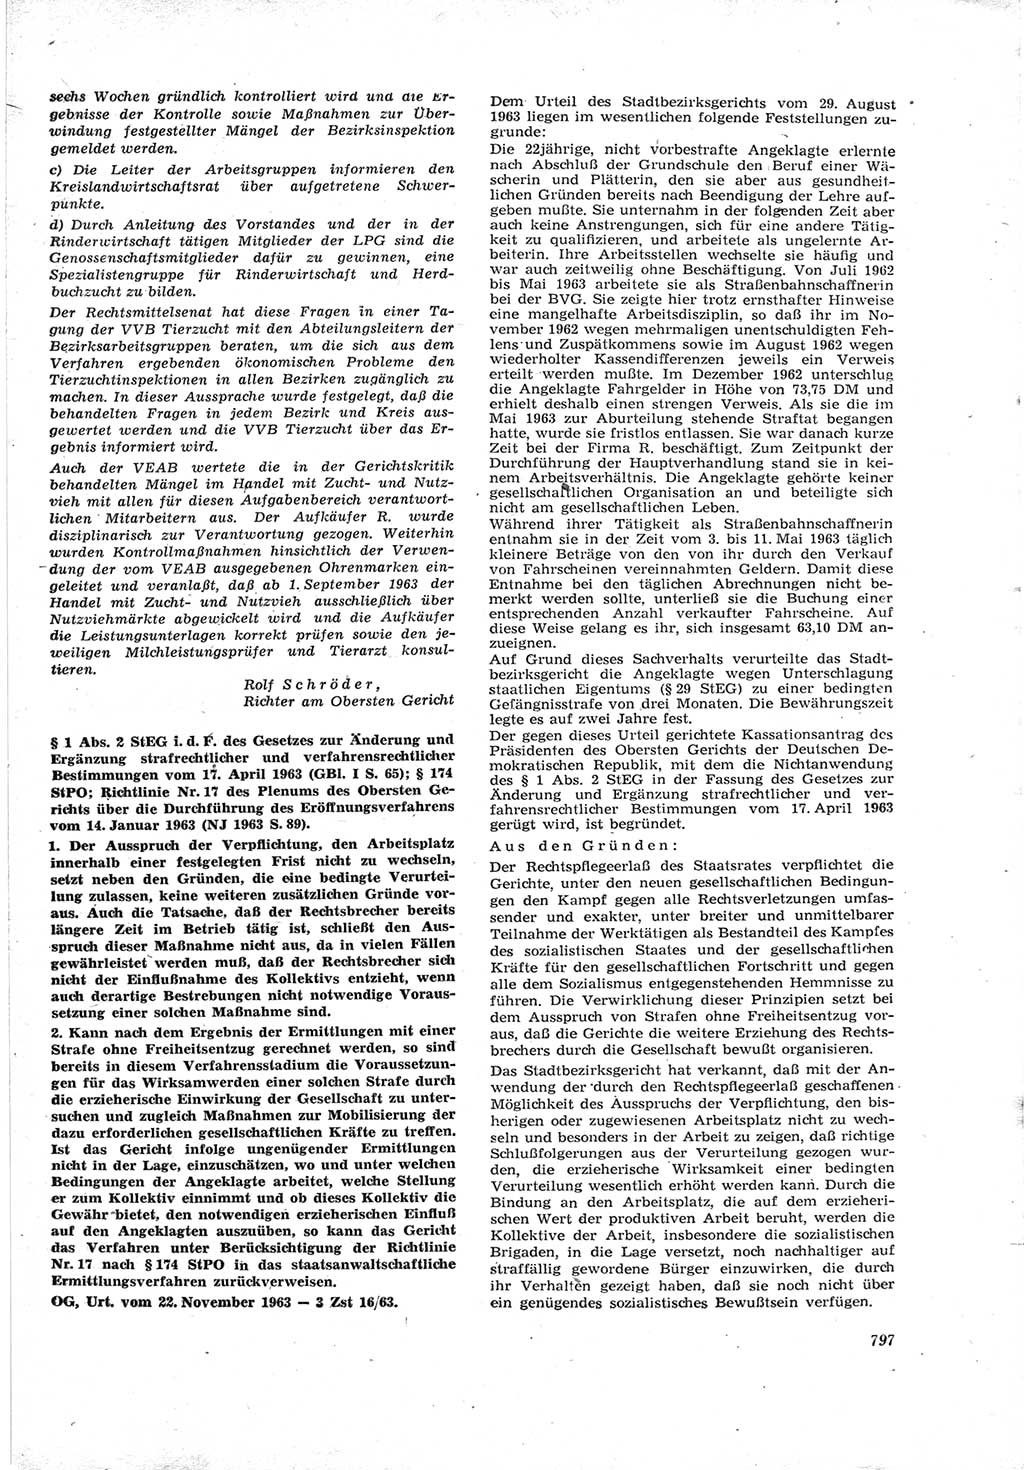 Neue Justiz (NJ), Zeitschrift für Recht und Rechtswissenschaft [Deutsche Demokratische Republik (DDR)], 17. Jahrgang 1963, Seite 797 (NJ DDR 1963, S. 797)